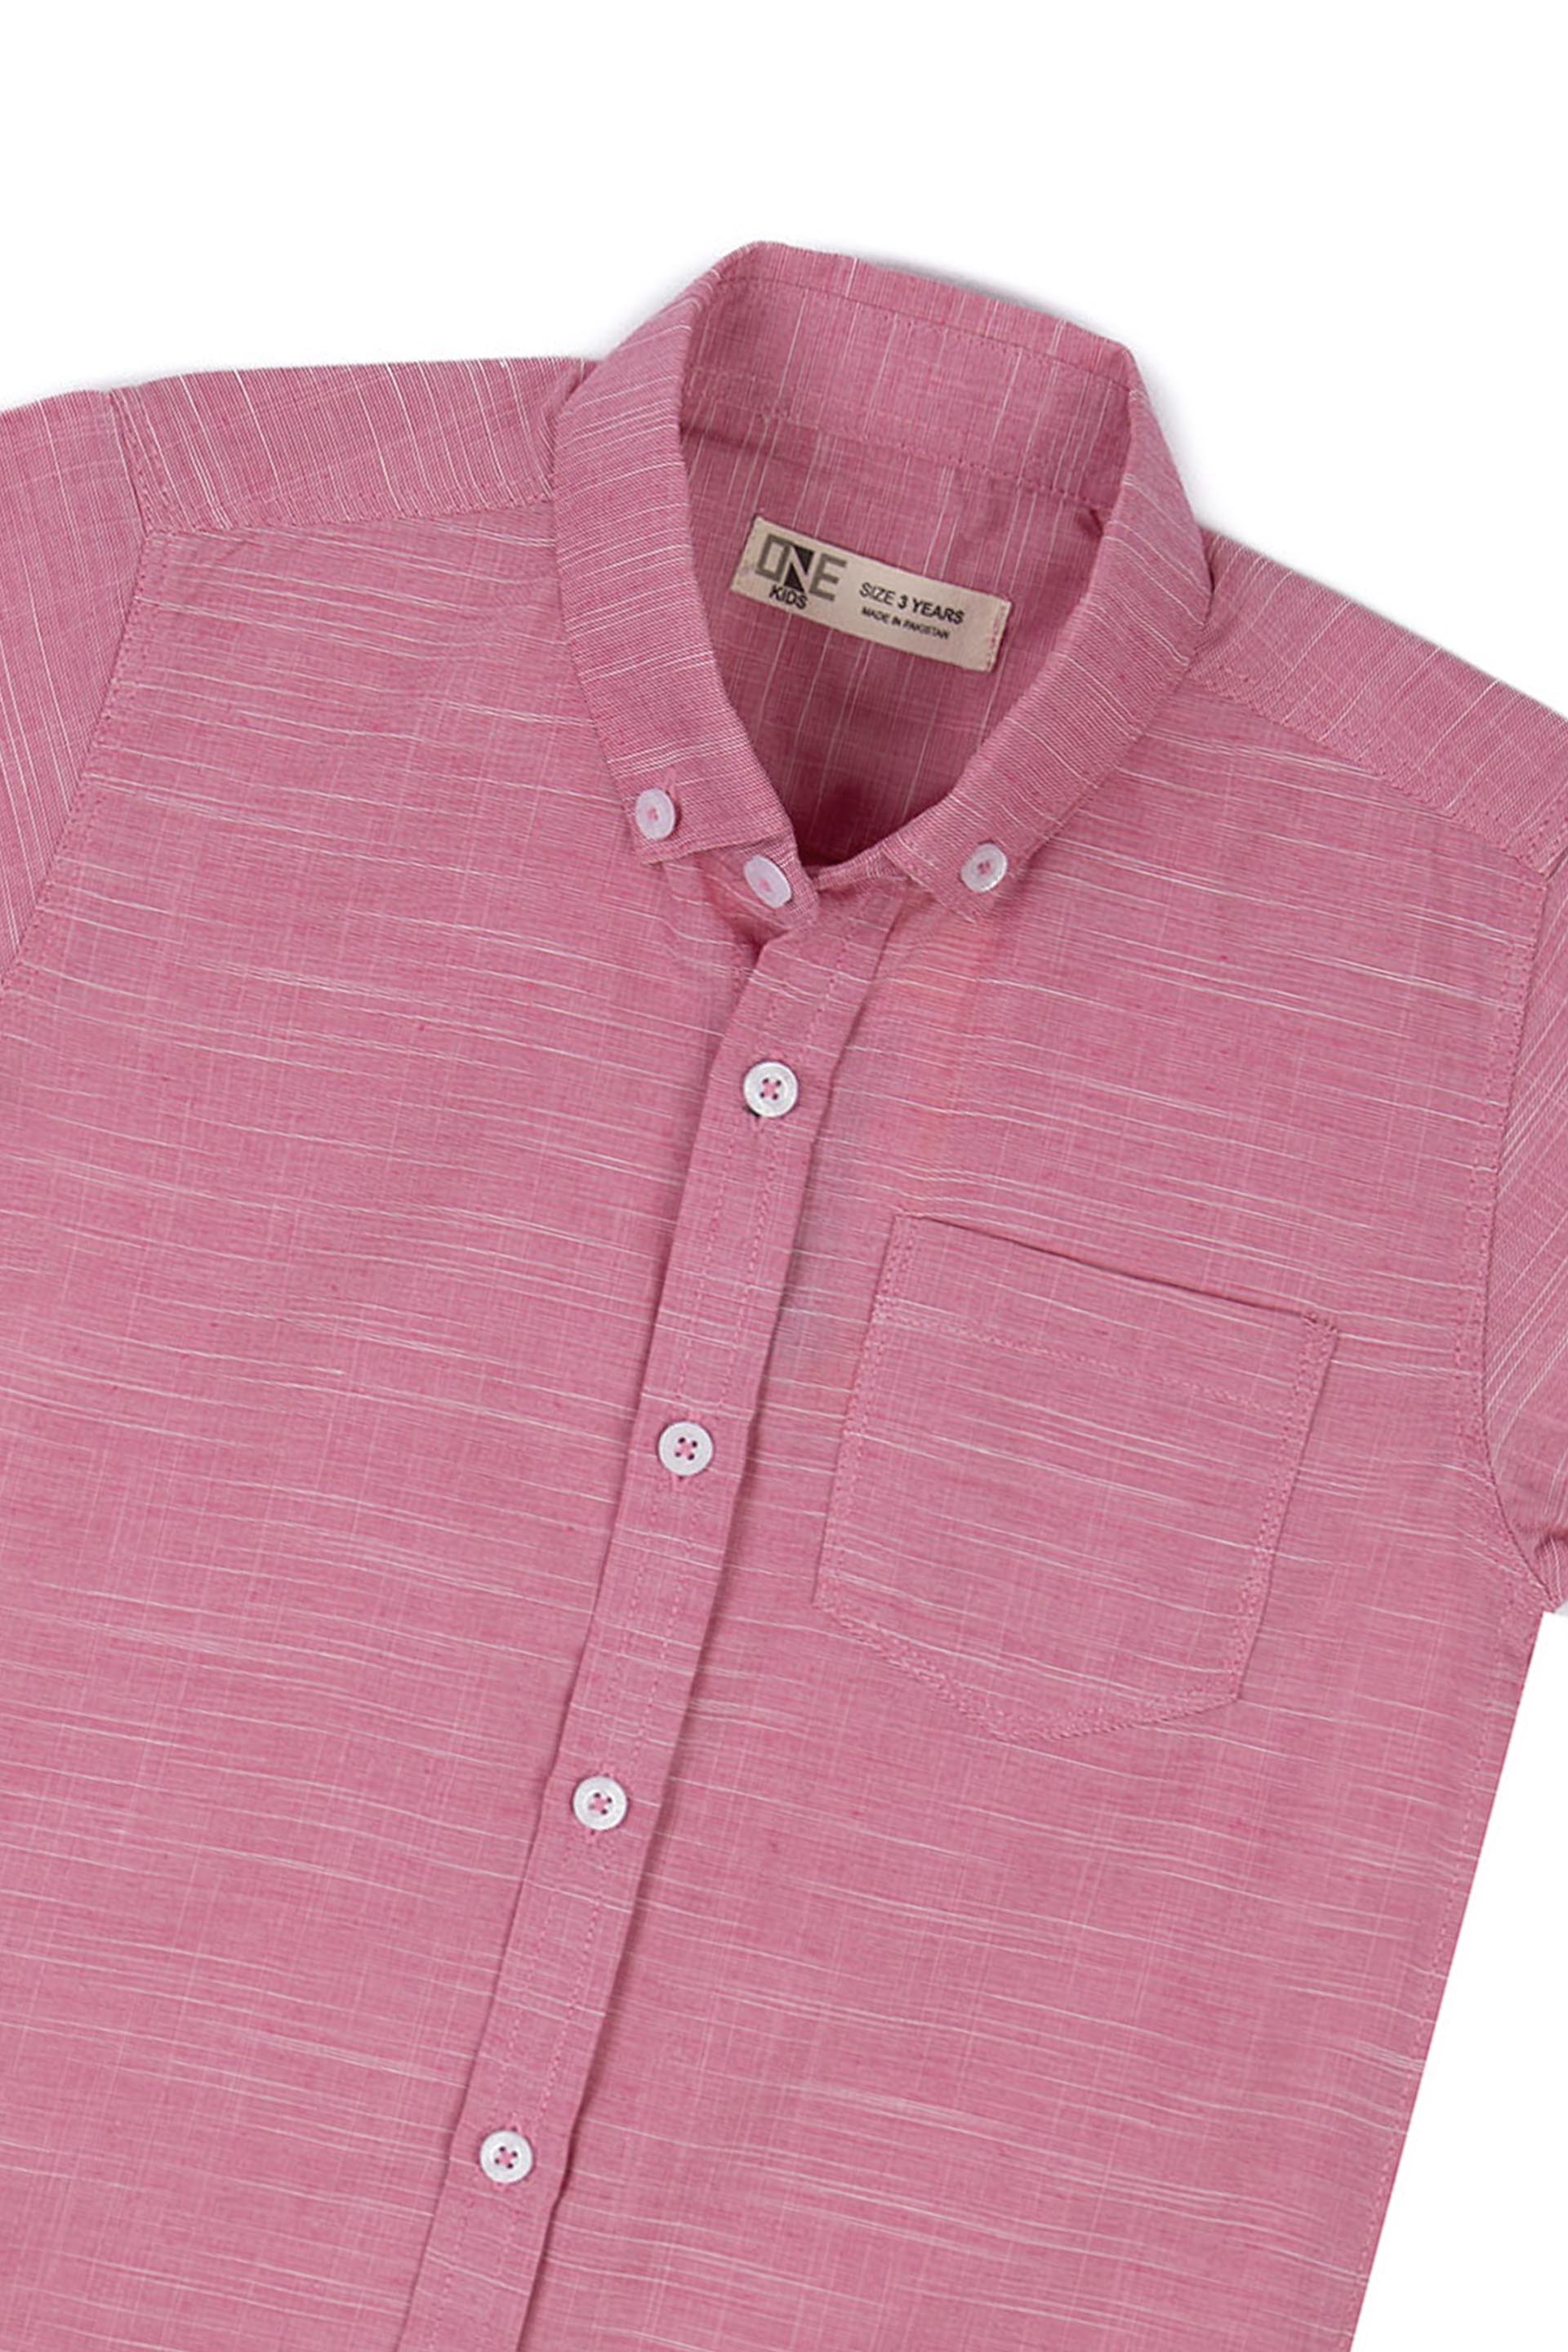 Piping Shirt Pink